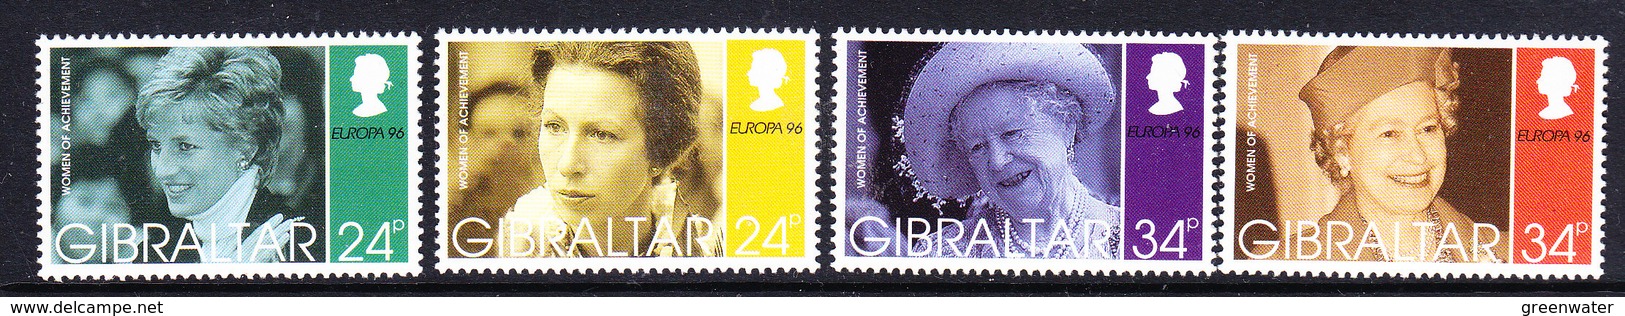 Europa Cept 1996 Gibraltar 4v ** Mnh (46060) - 1996